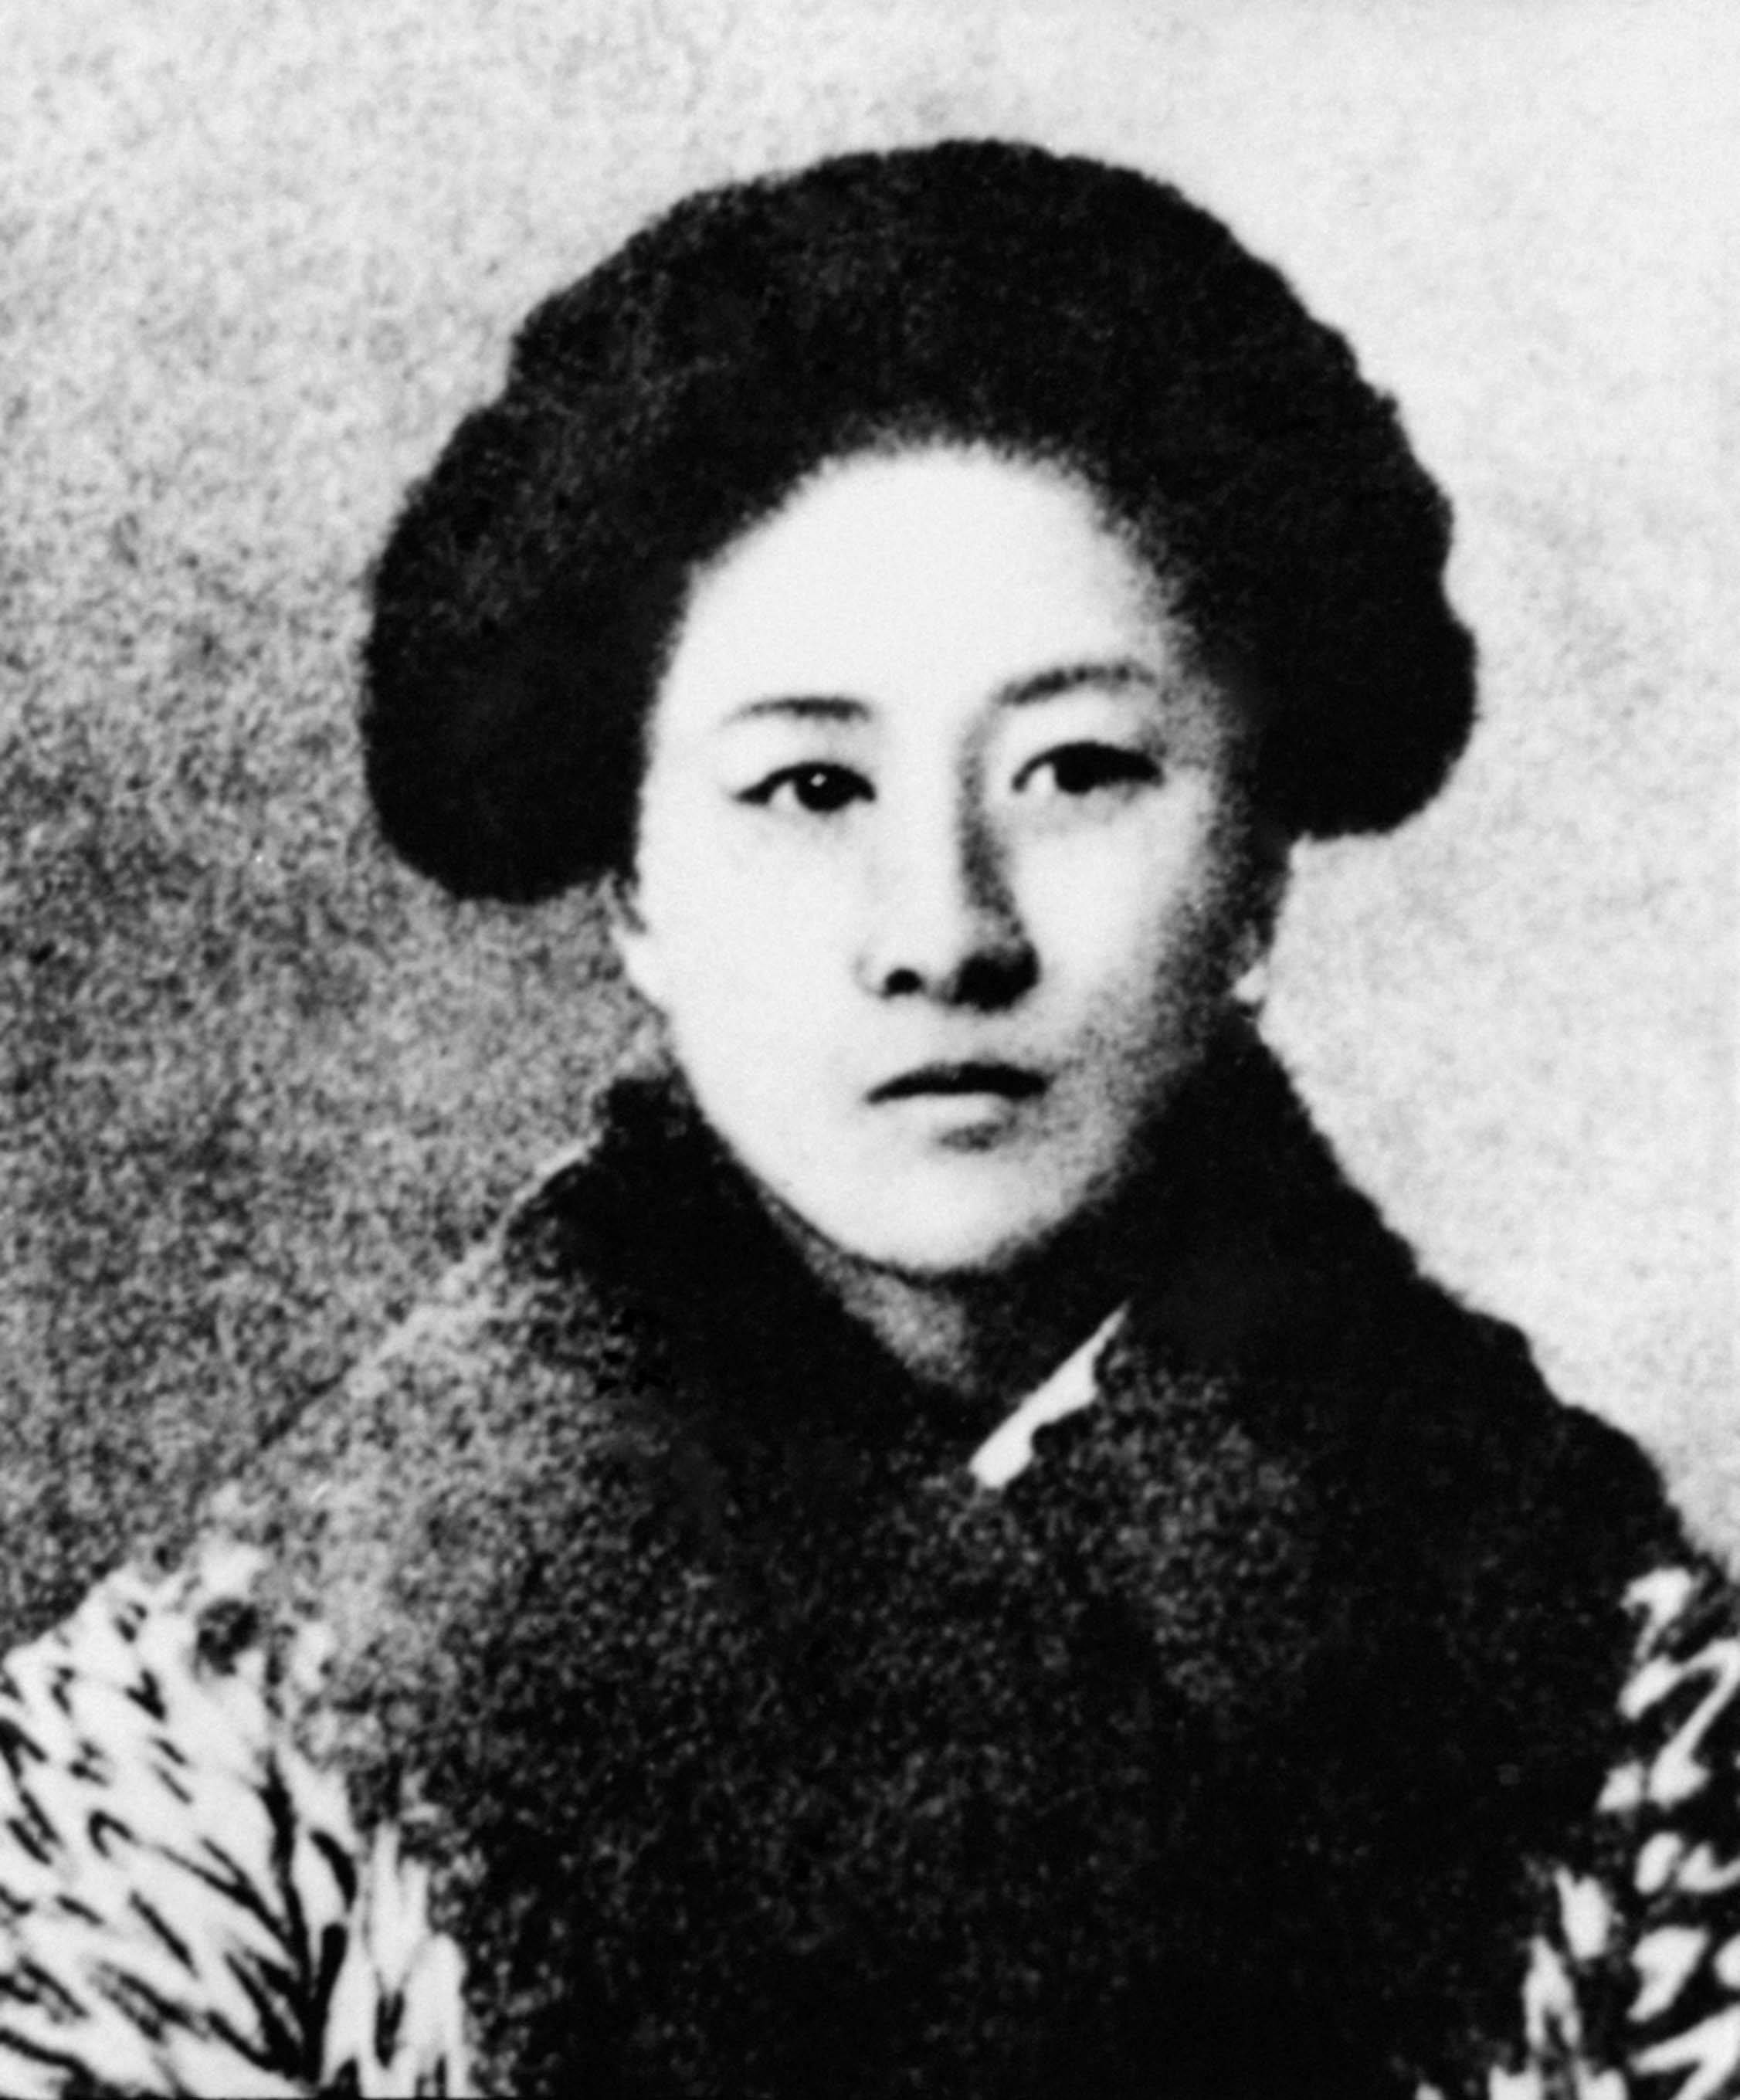 秋瑾烈士(1875-1907)徐锡麟,字伯荪,又字伯圣,别名光汉子,浙江省绍兴